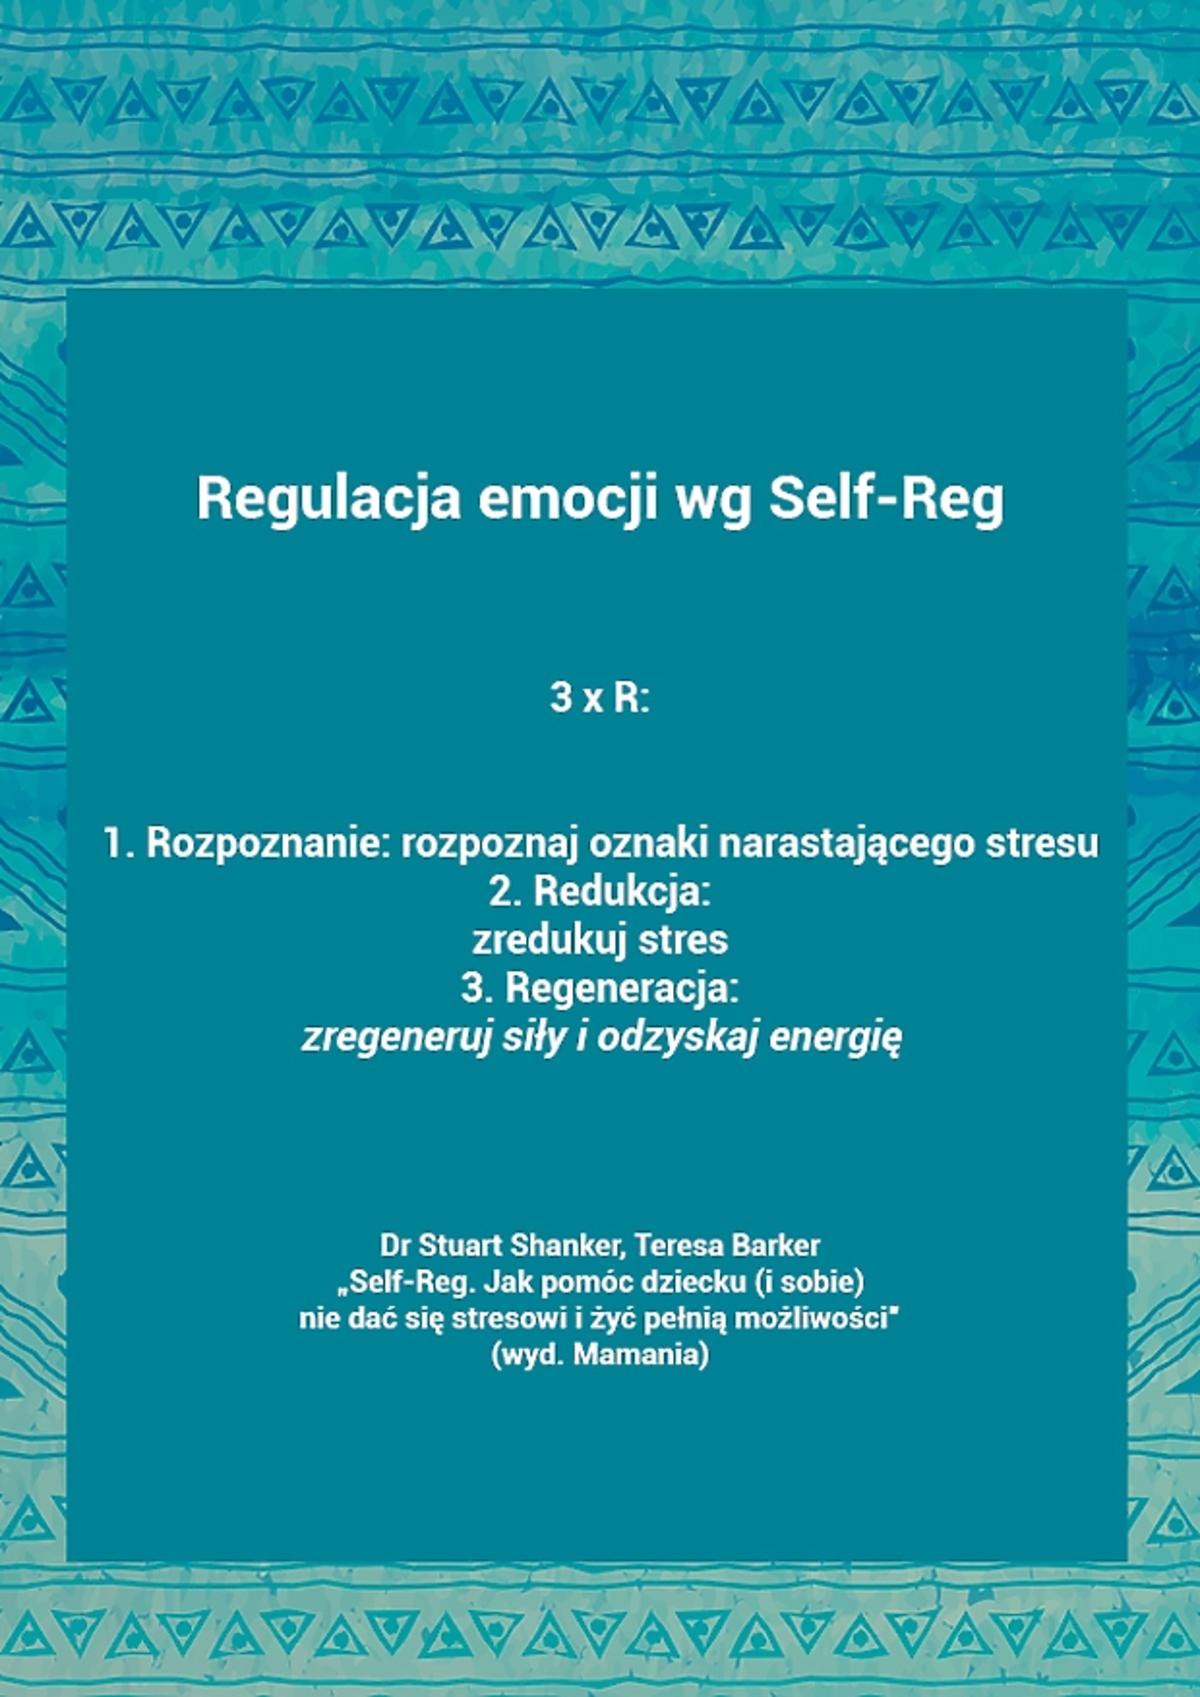 Self-Reg - metoda samoregulacji